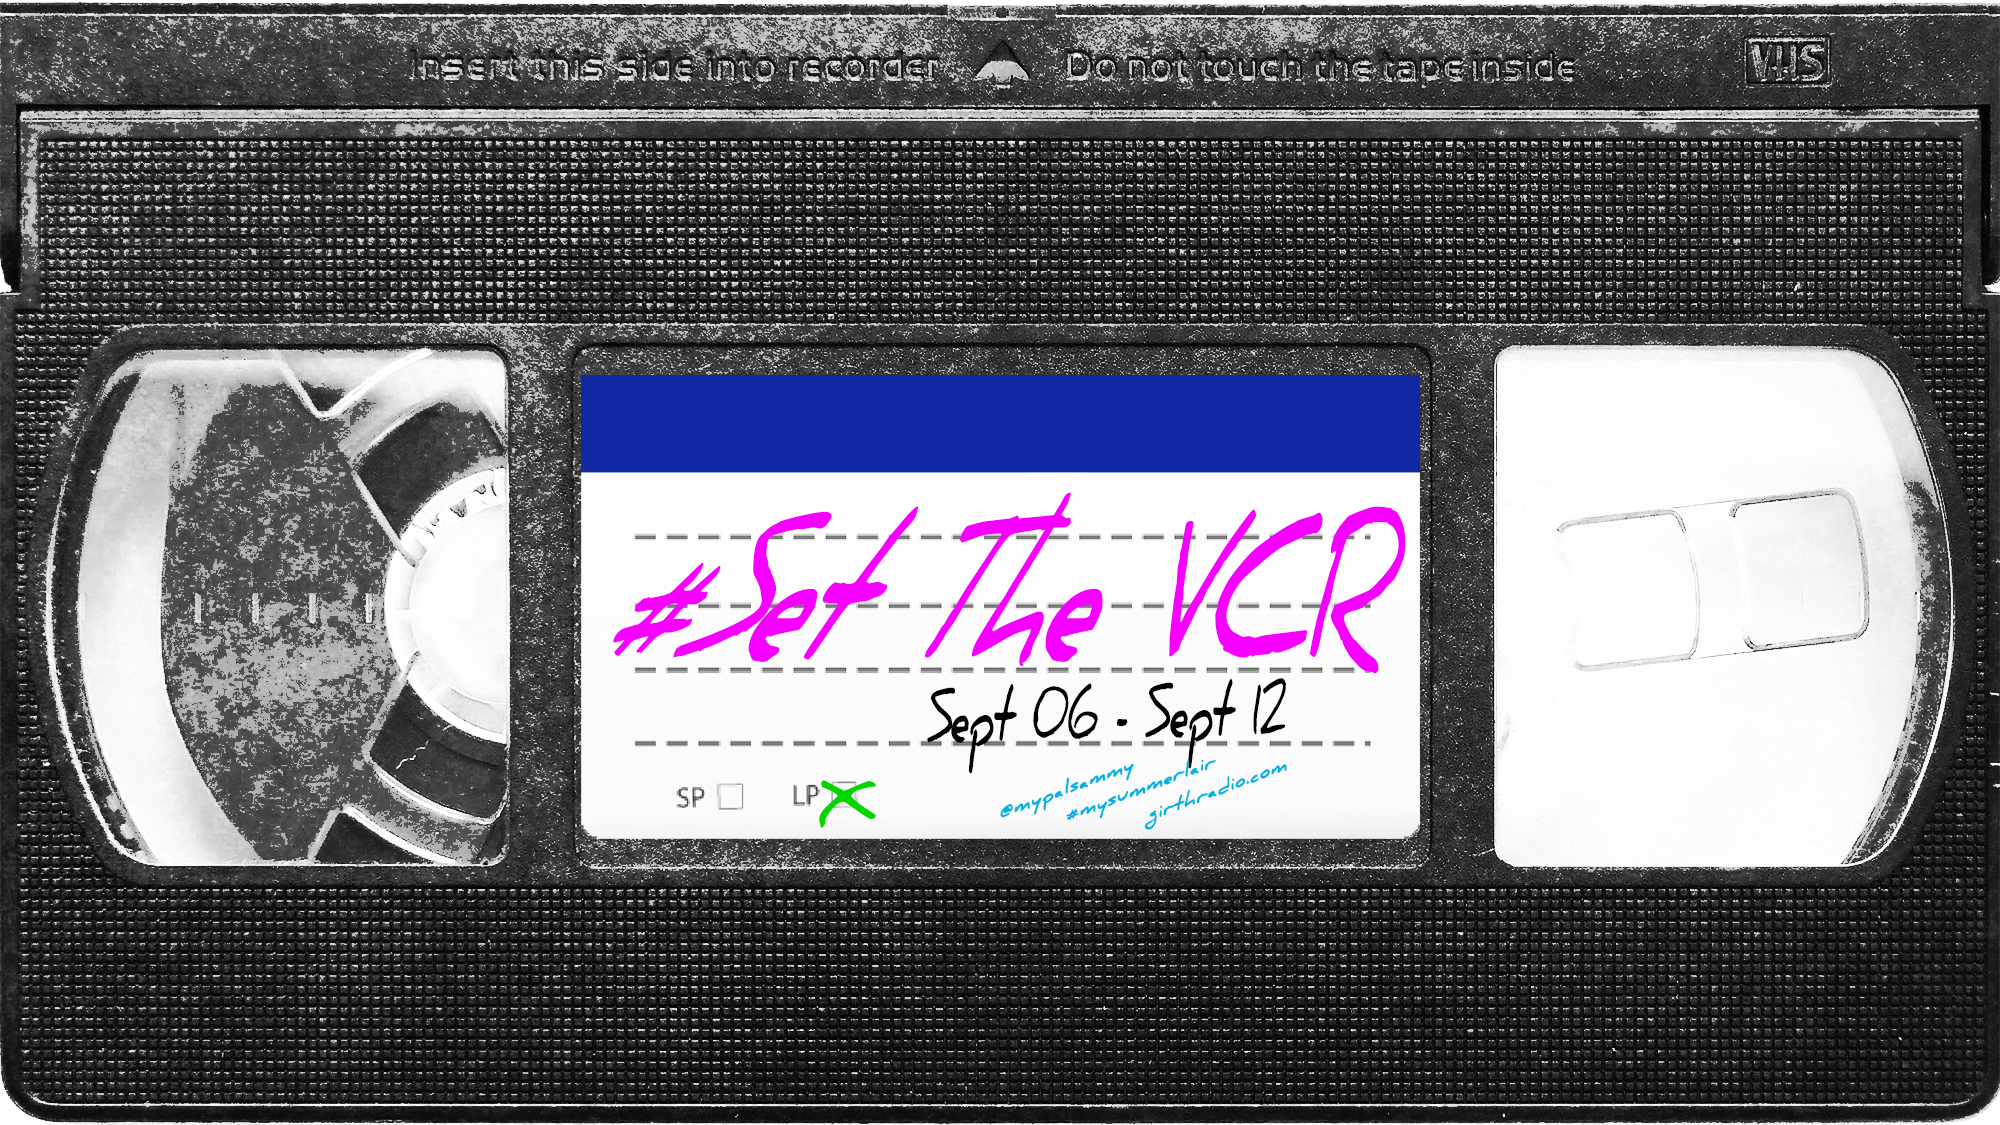 #SetTheVCR: September 6-12, 2020